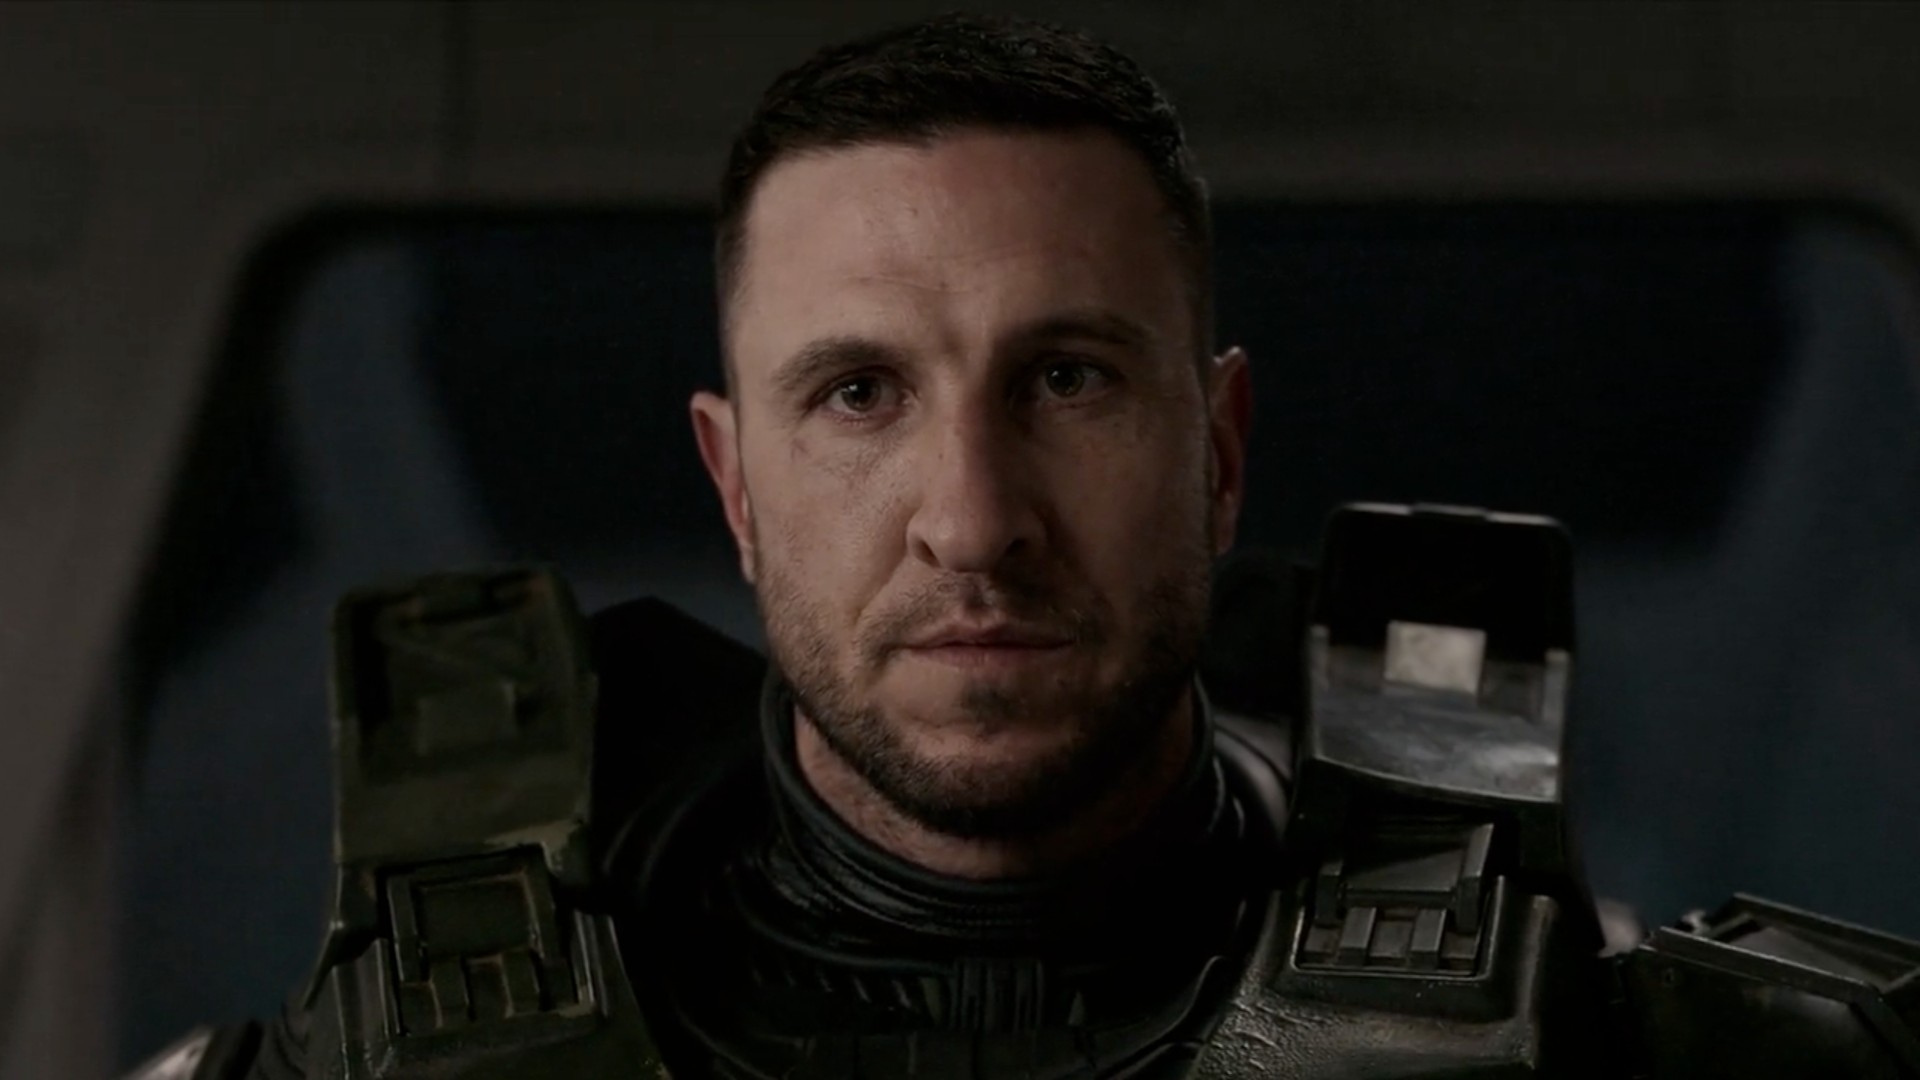 Halo: Pablo Schreiber To Star As Master Chief, Yerin Ha Also Cast